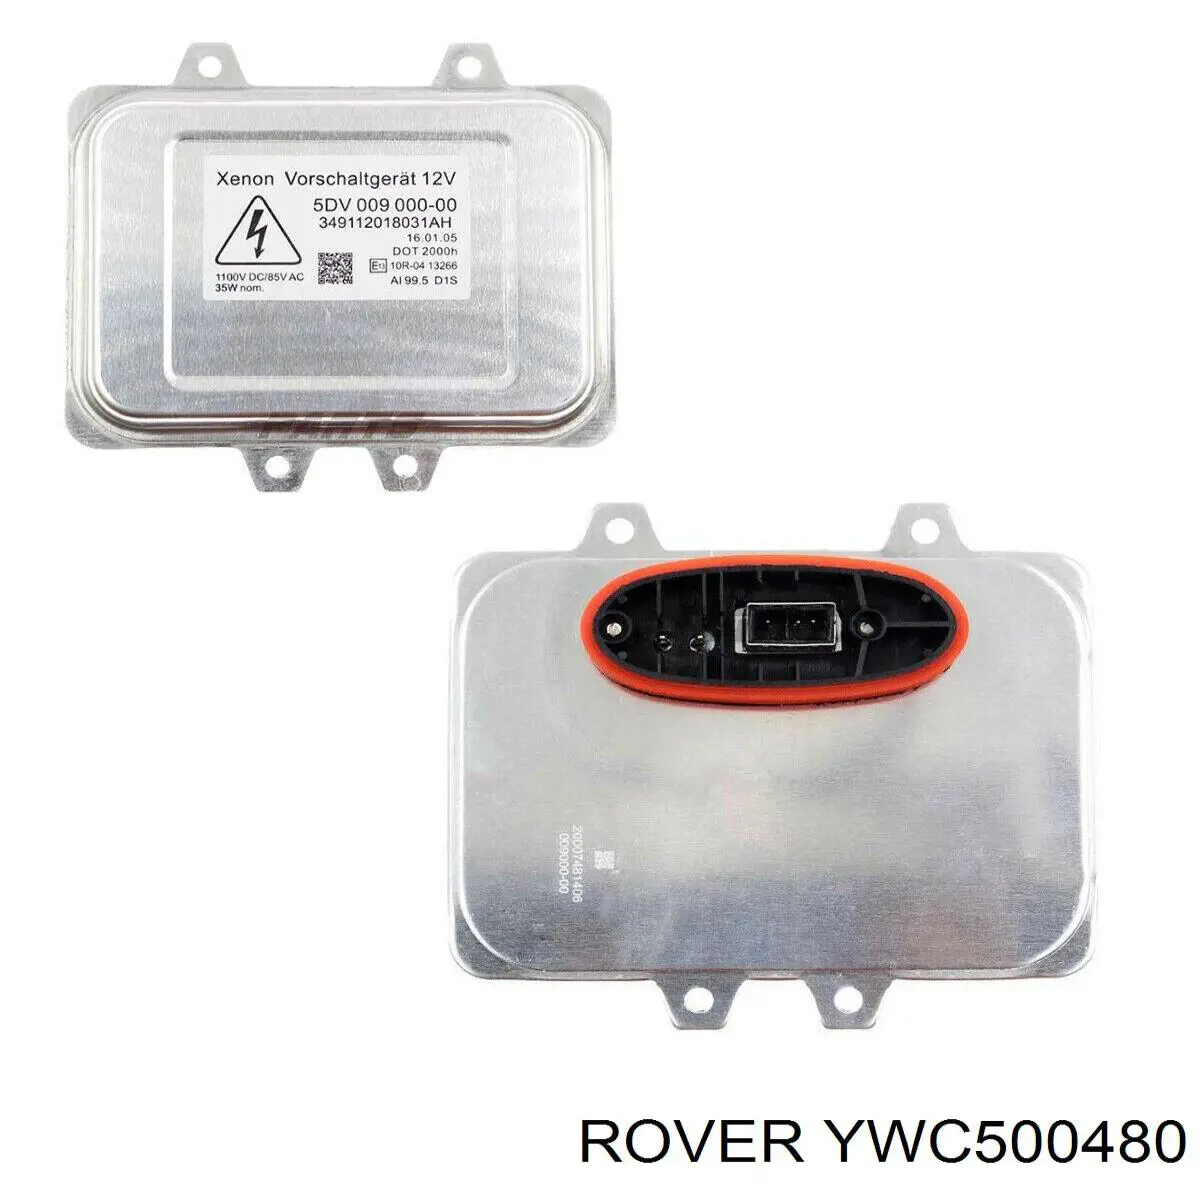 YWC500480 Rover xenon, unidad control